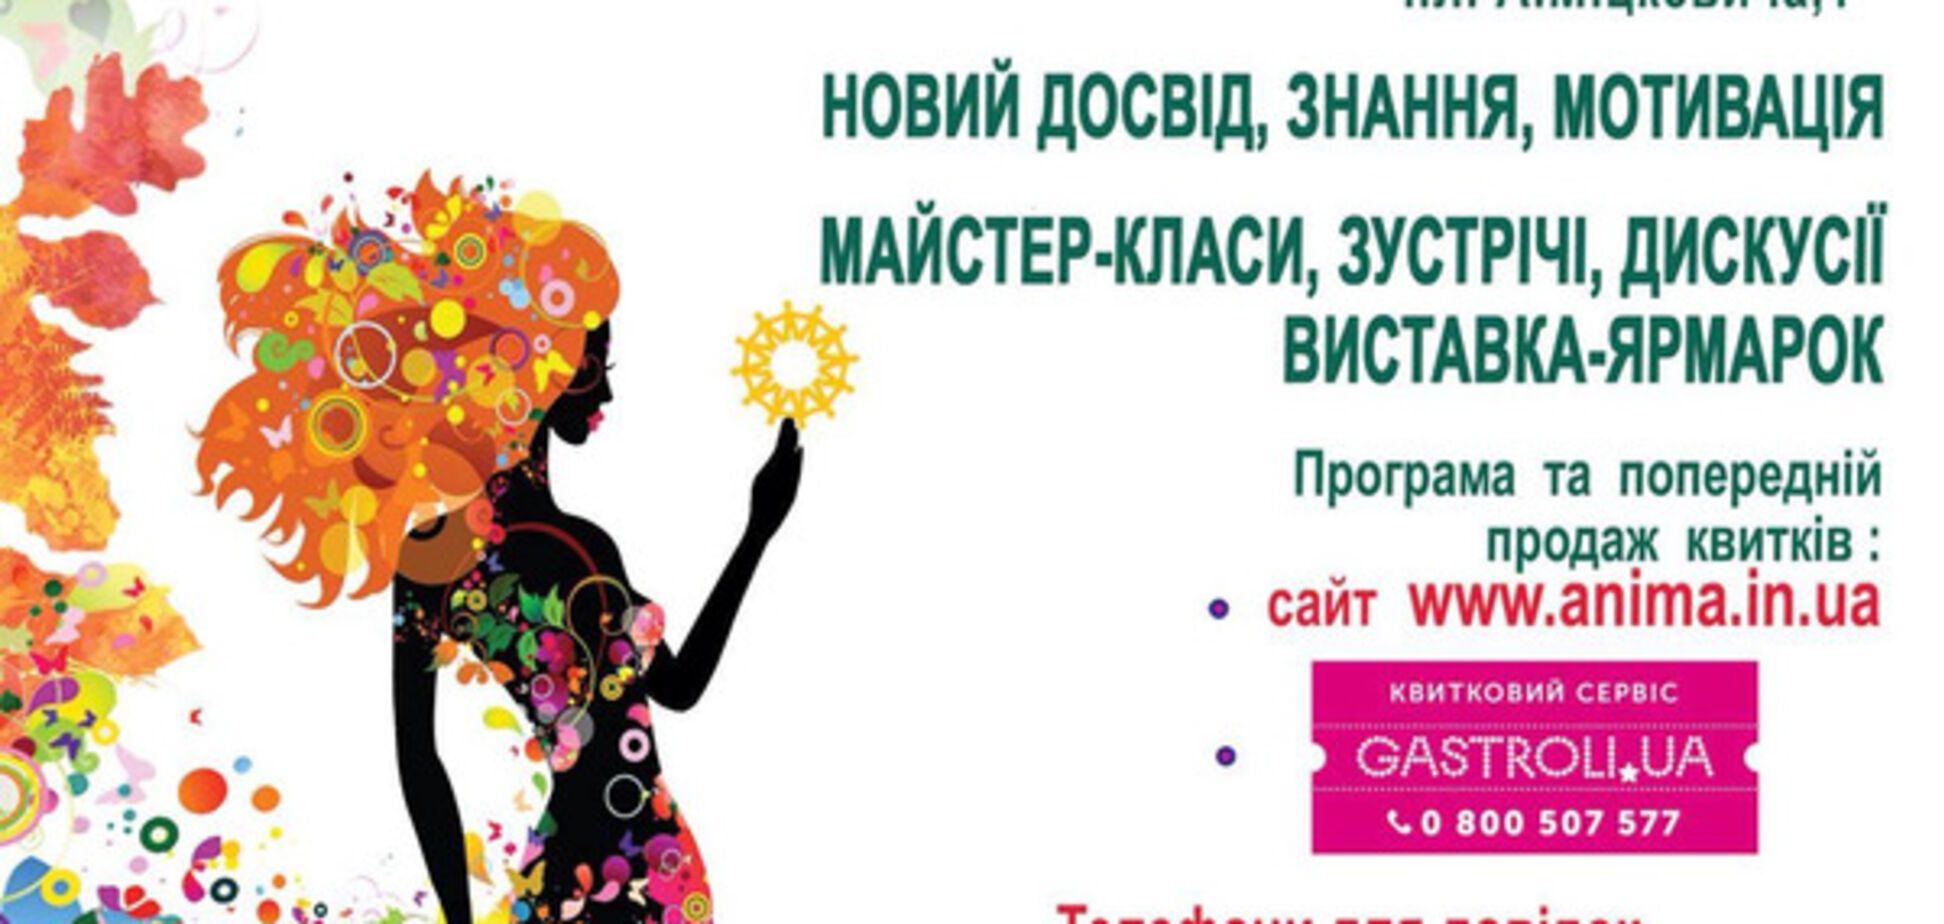 Во Львове состоится интеллектуальный и познавательный проект для женщины